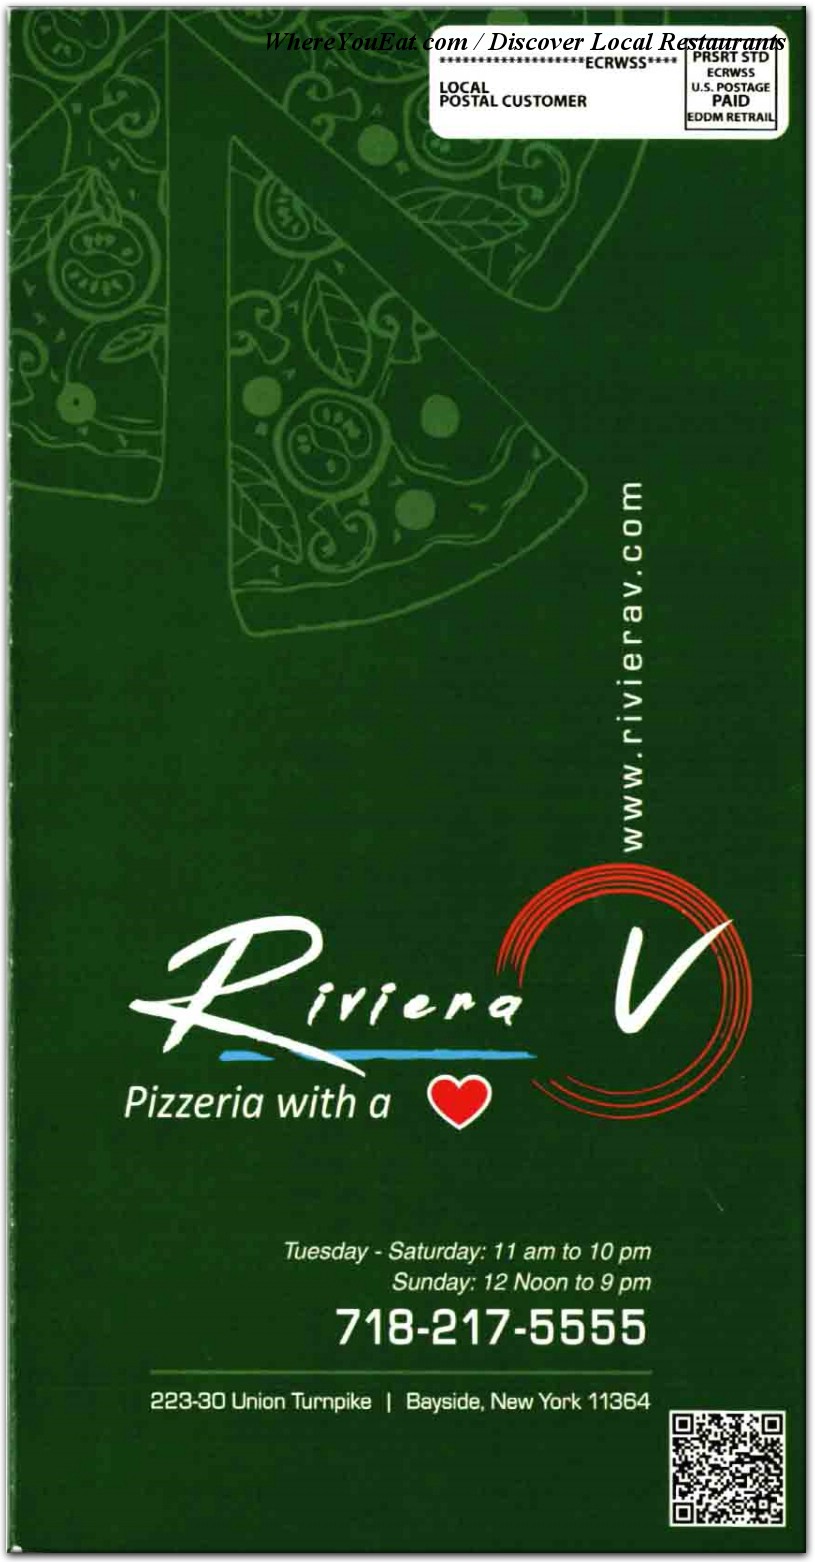 Home - Riviera V Pizzeria